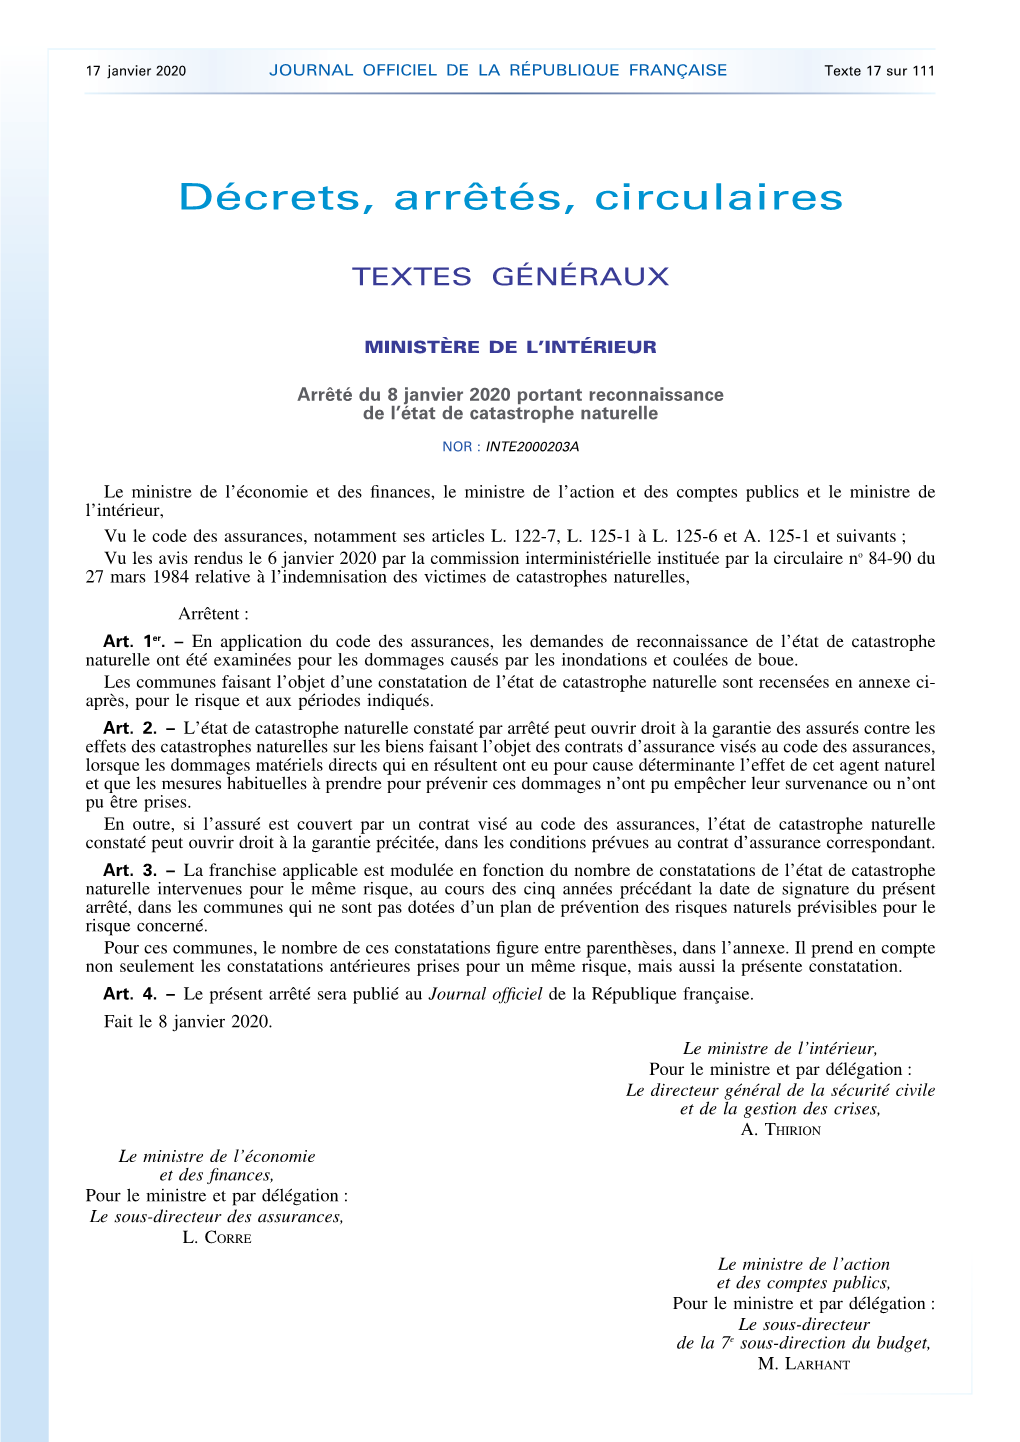 JOURNAL OFFICIEL DE LA RÉPUBLIQUE FRANÇAISE Texte 17 Sur 111